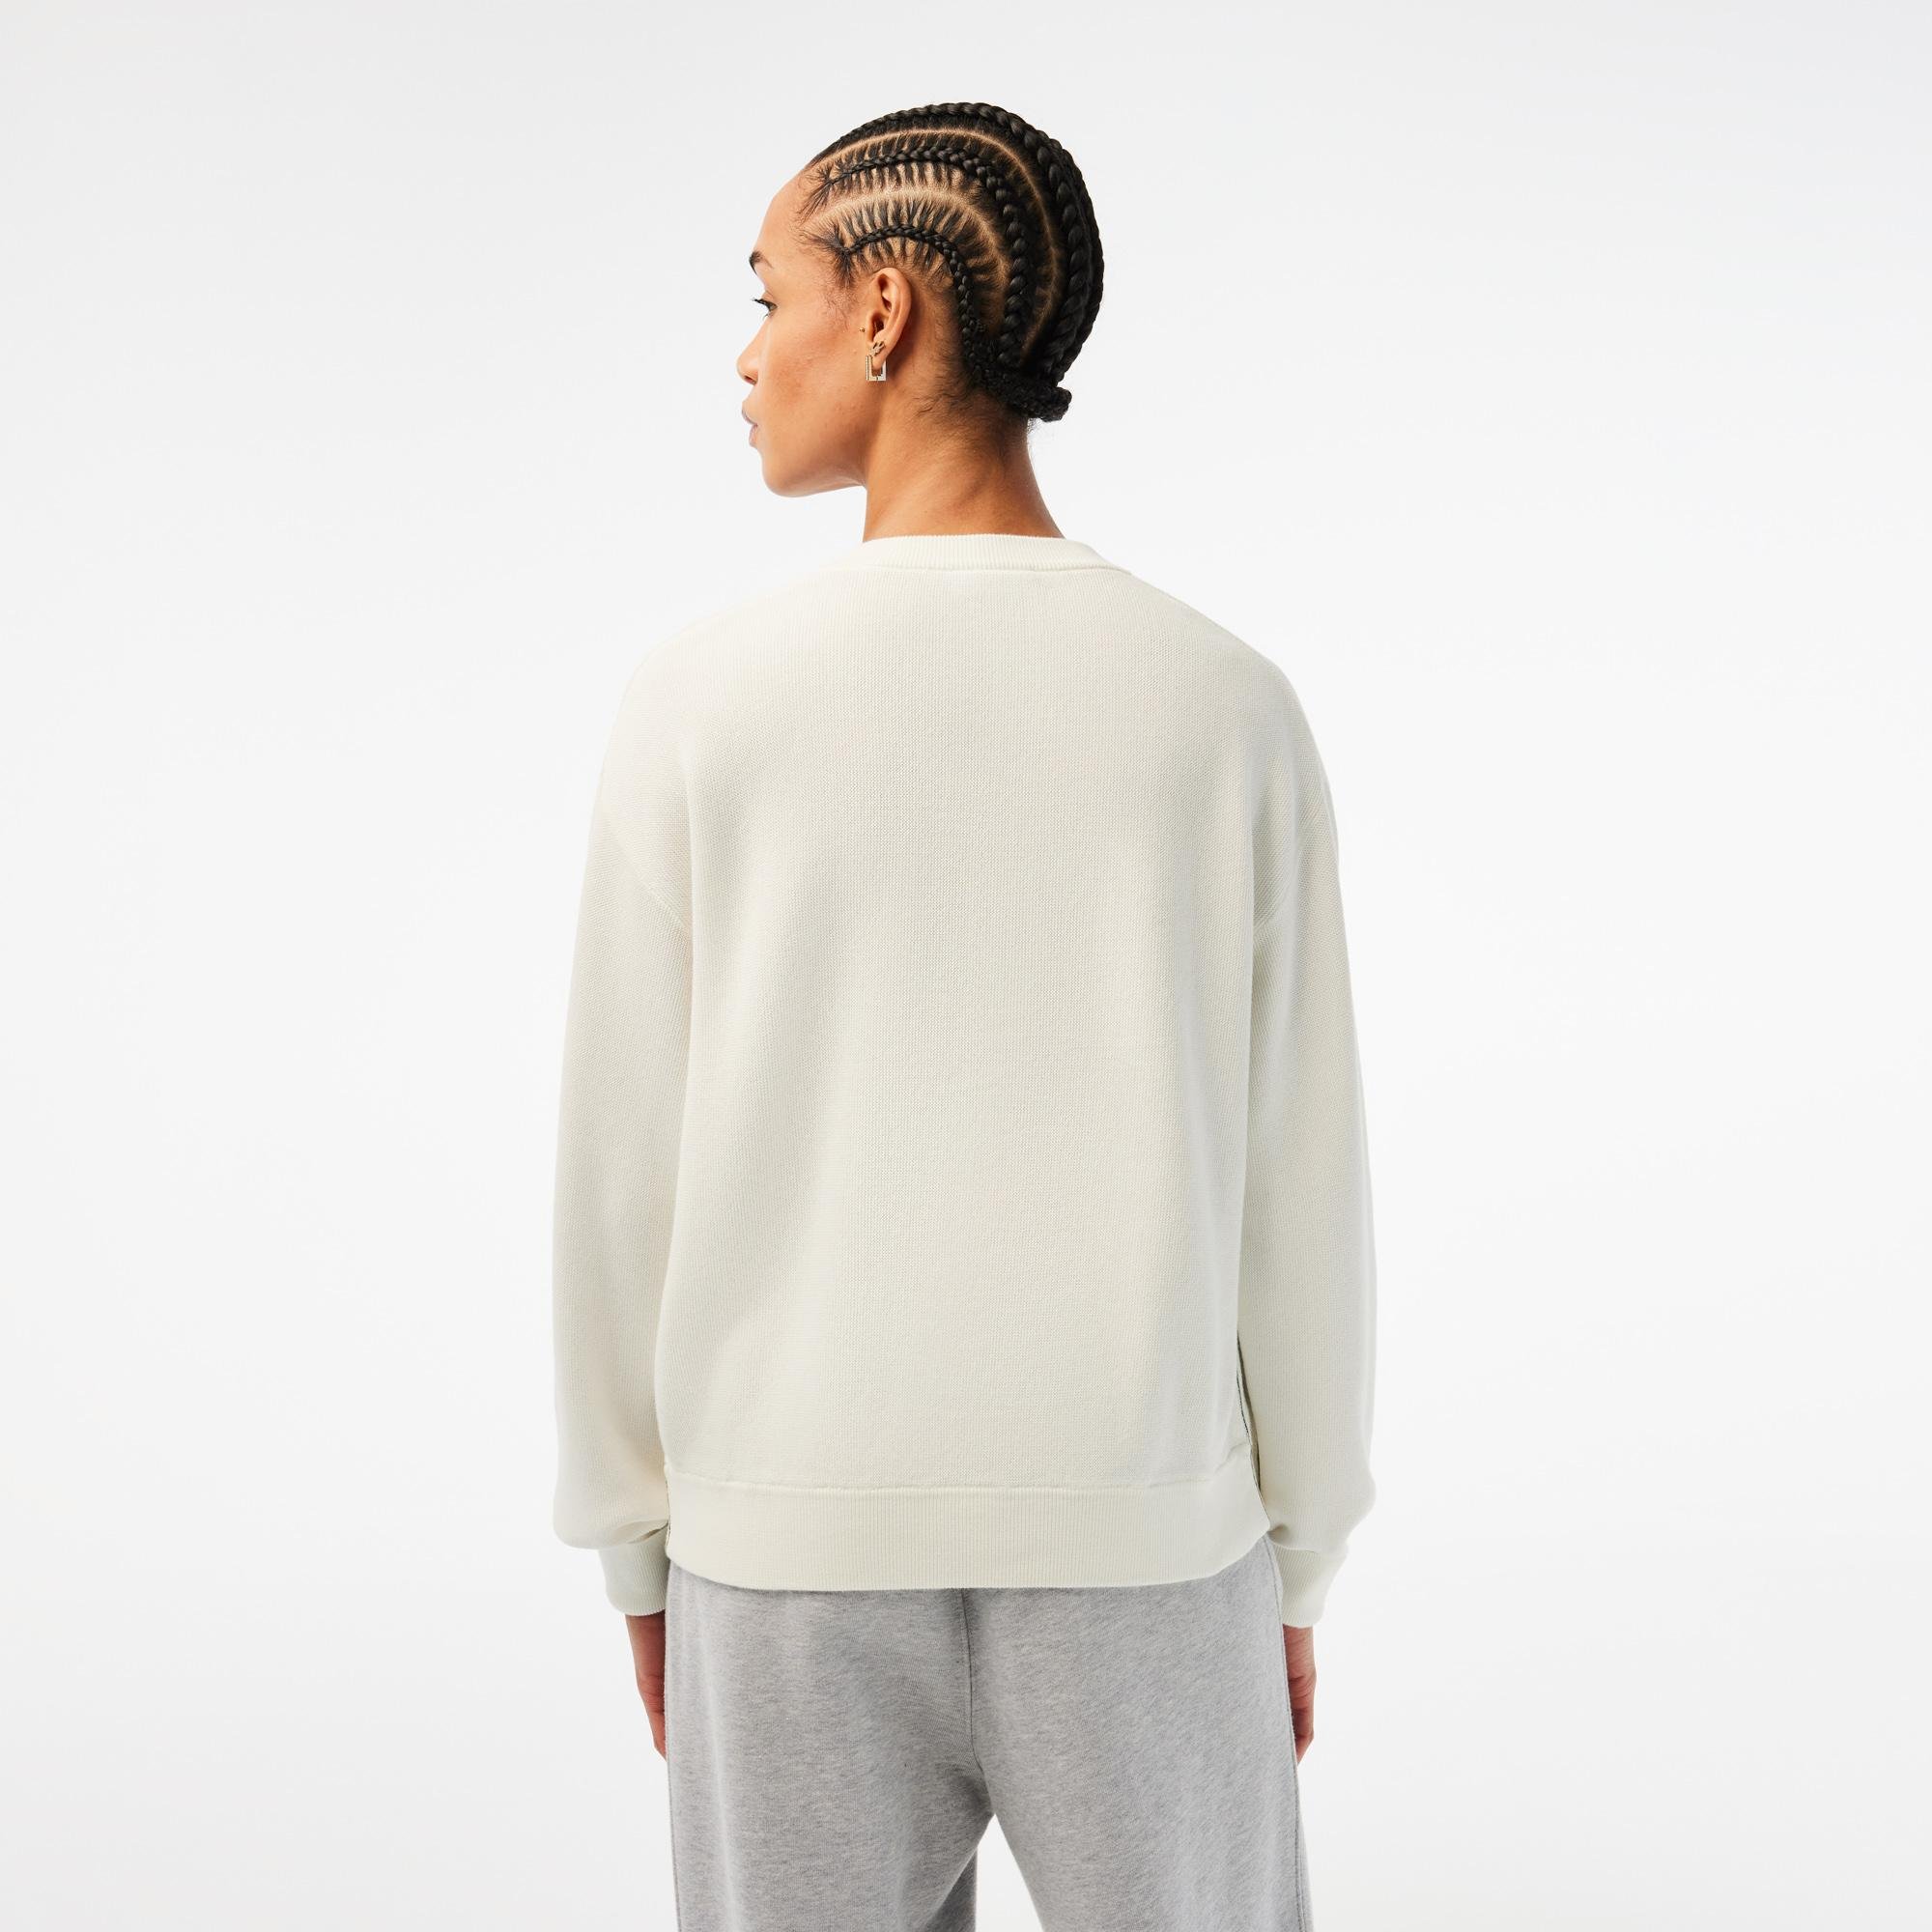 Lacoste damski sweter z bawełny organicznej z dekoltem w kształcie litery V